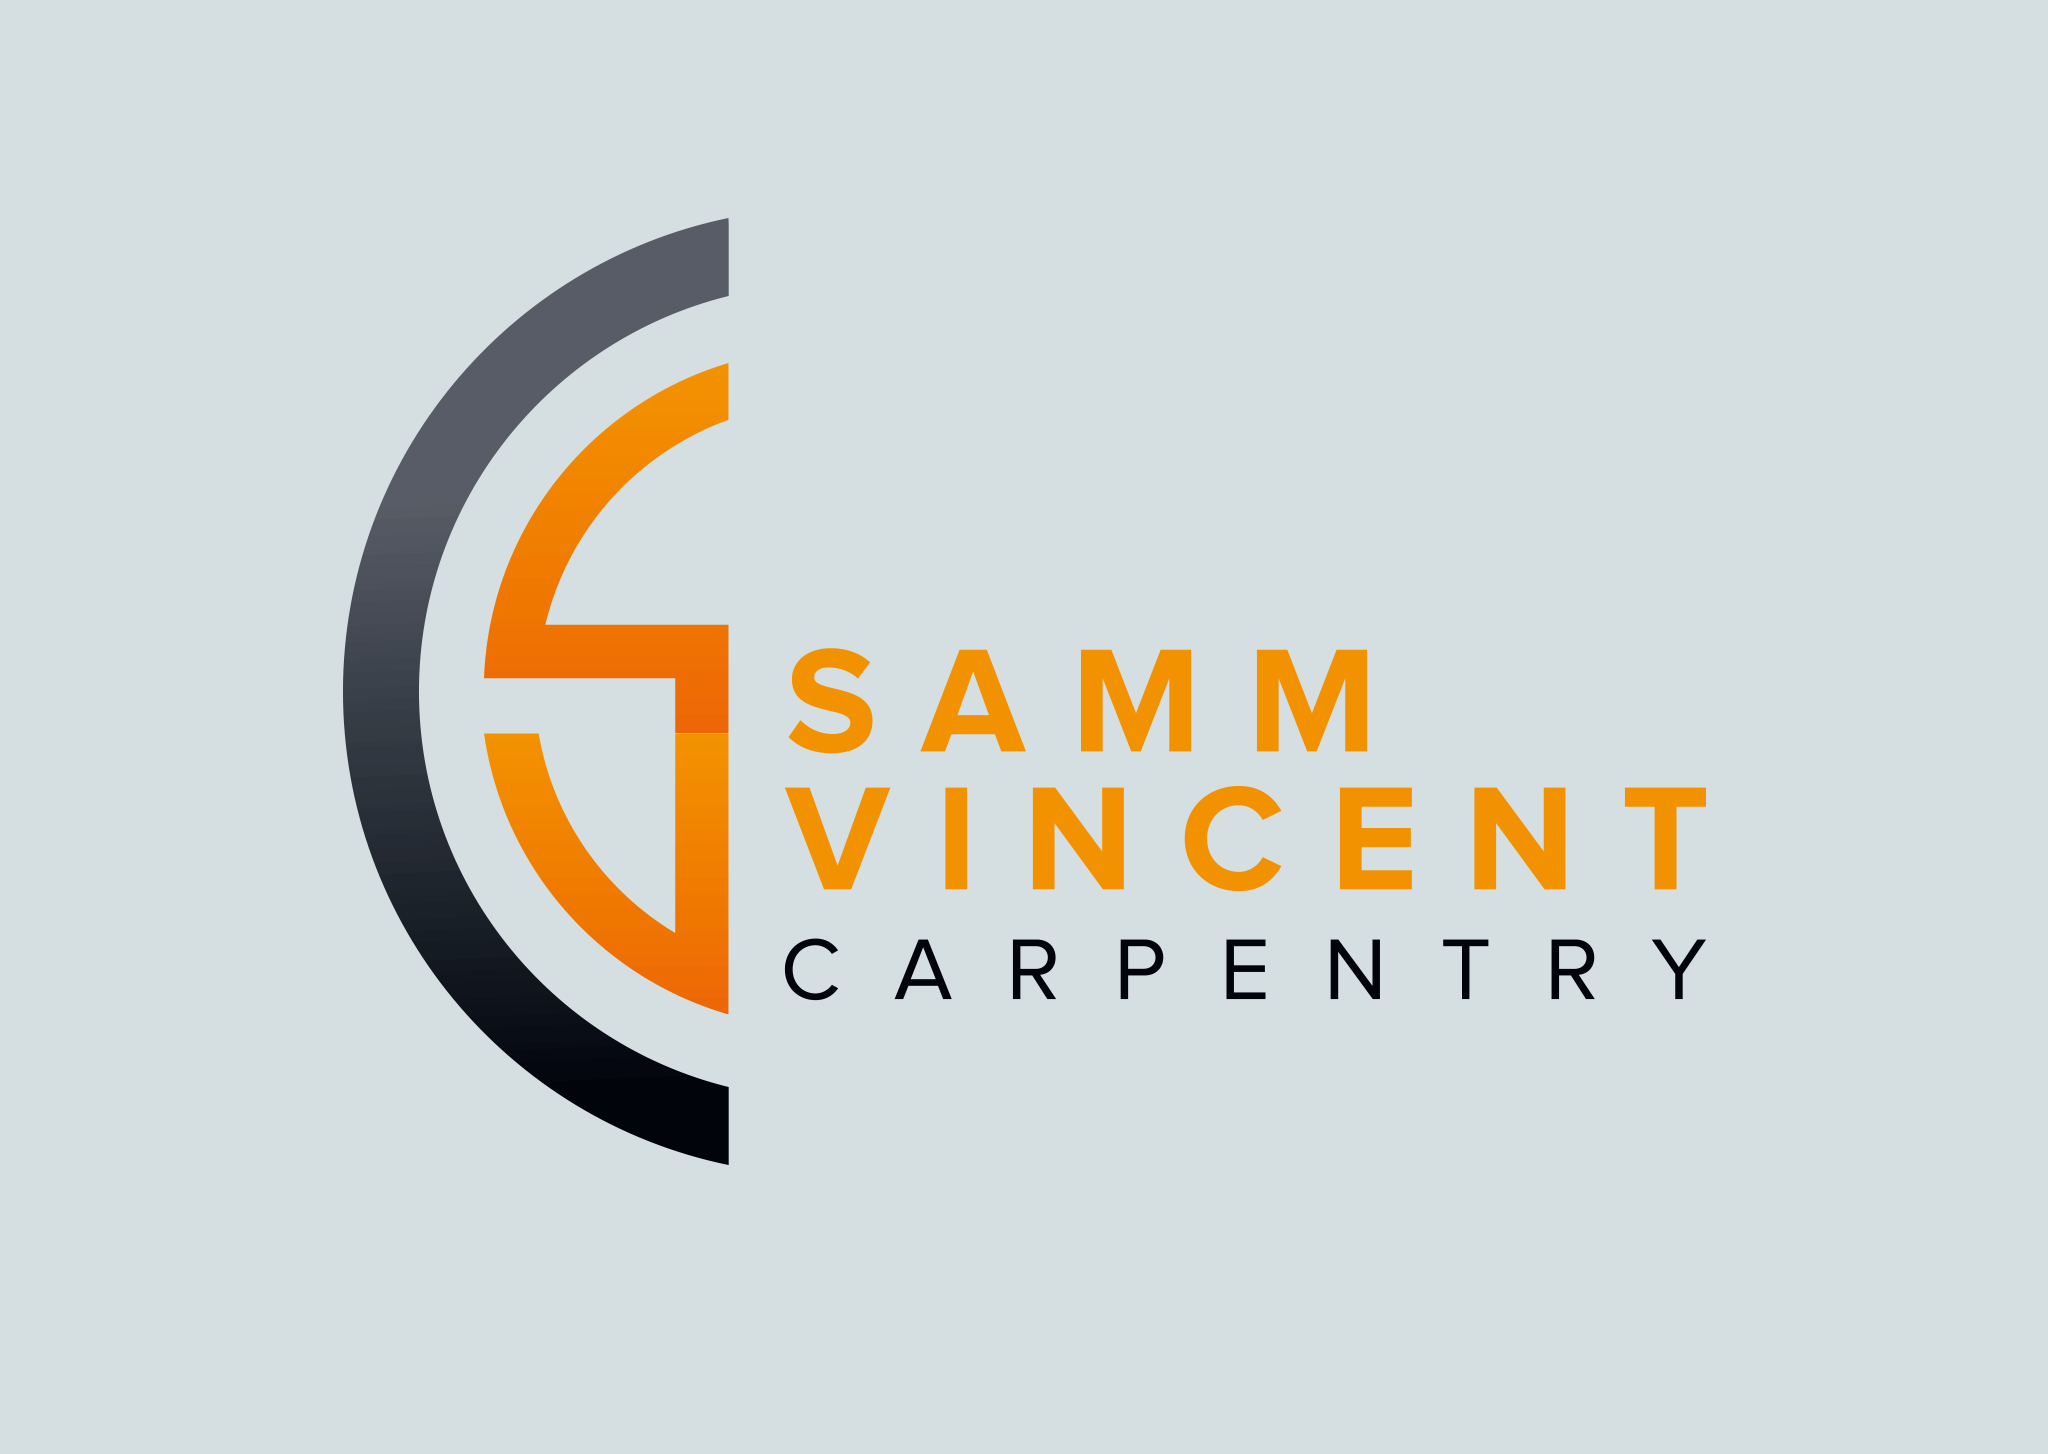 Samm Vincent Carpentry Brand Design